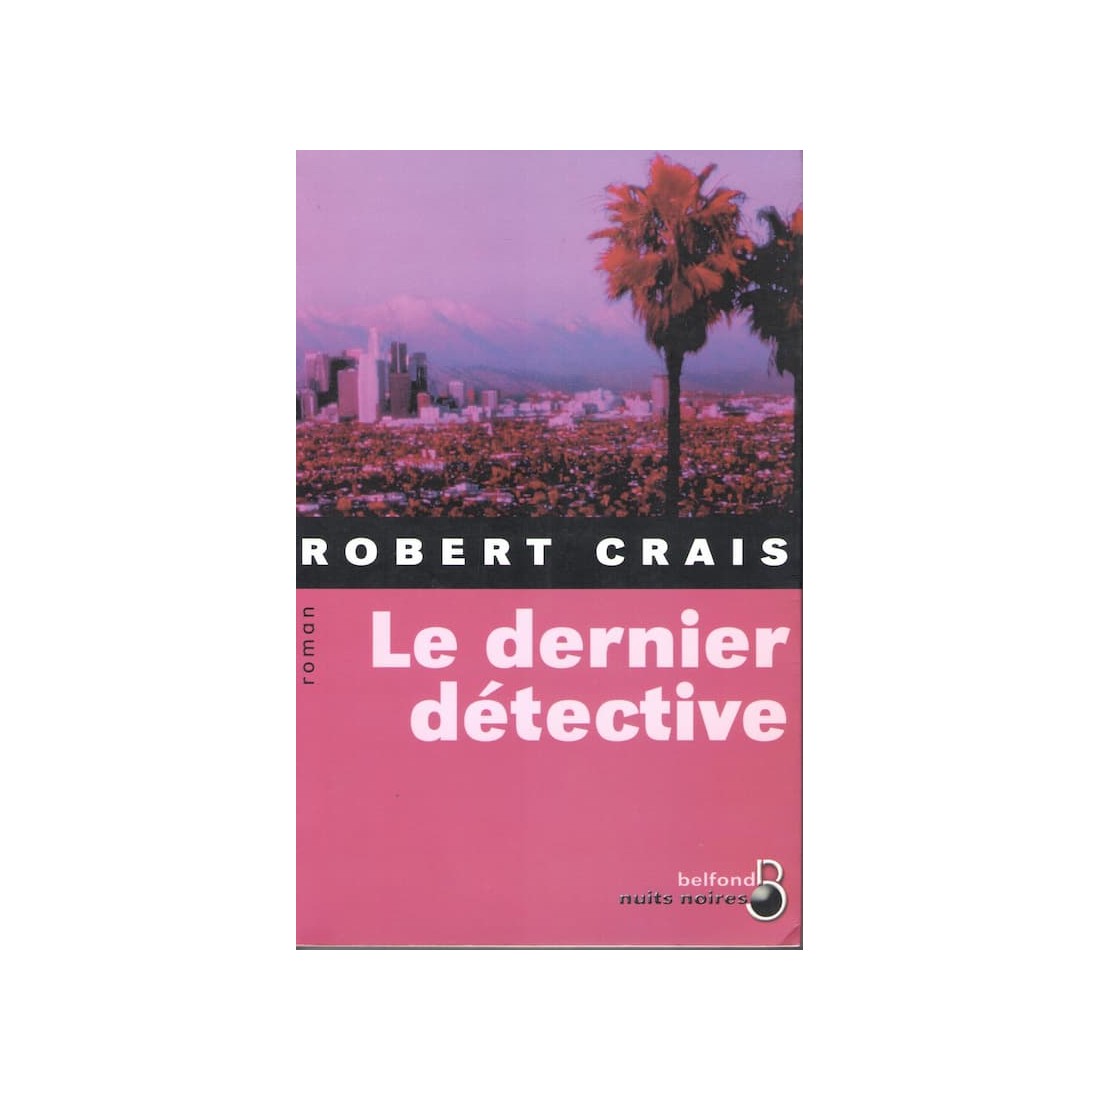 Le dernier détective - Roman de Robert Crais - Ocazlivres.com